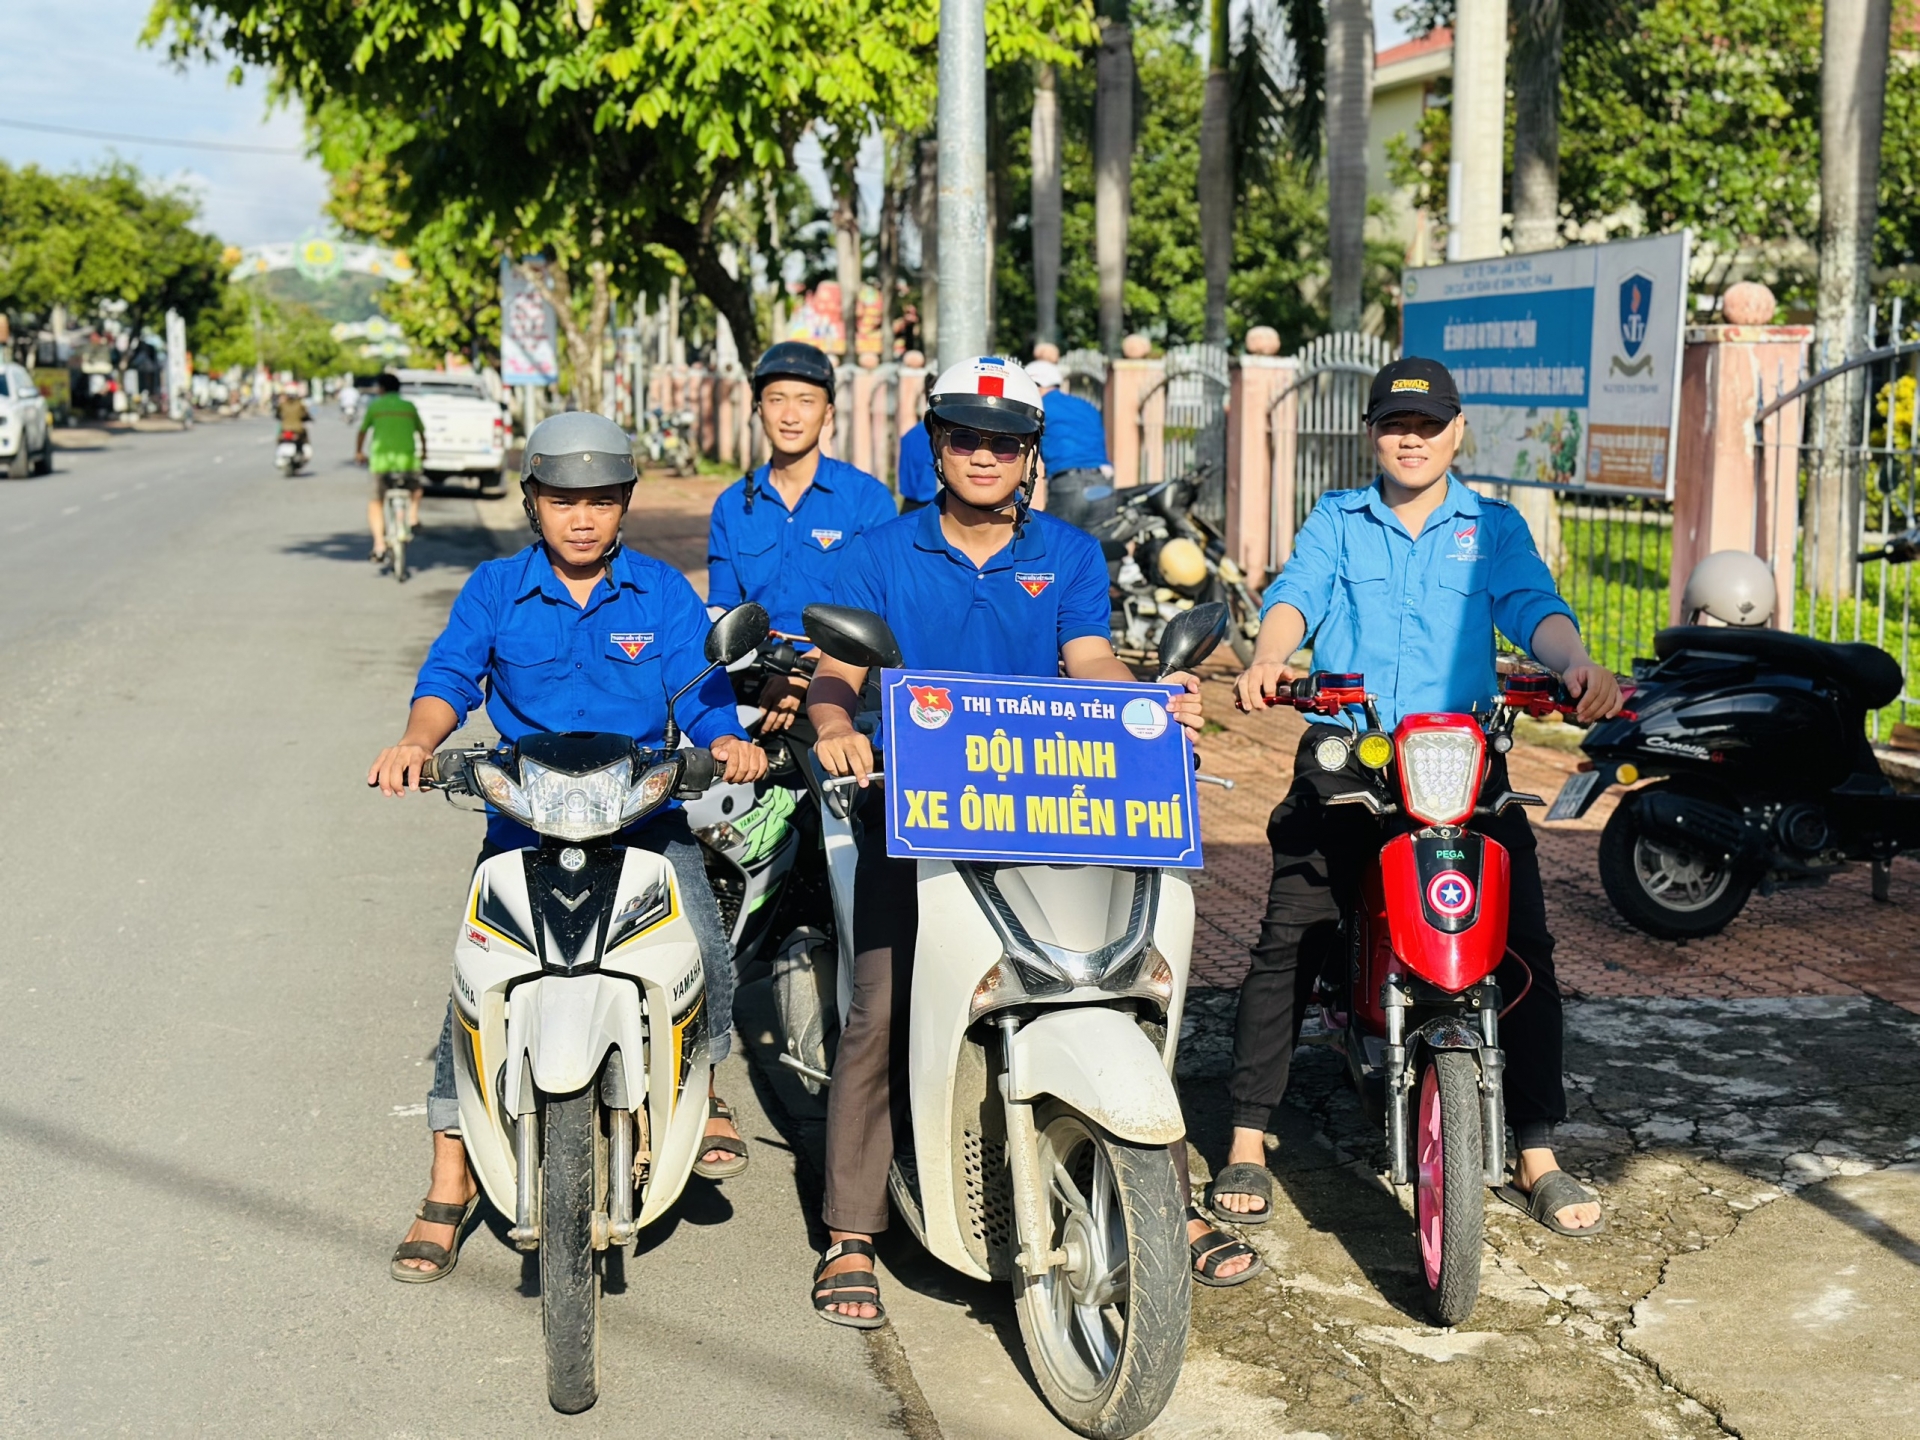 Đội hình xe ôm miễn phí của huyện Đạ Tẻh sẵn sàng hỗ trợ thí sinh